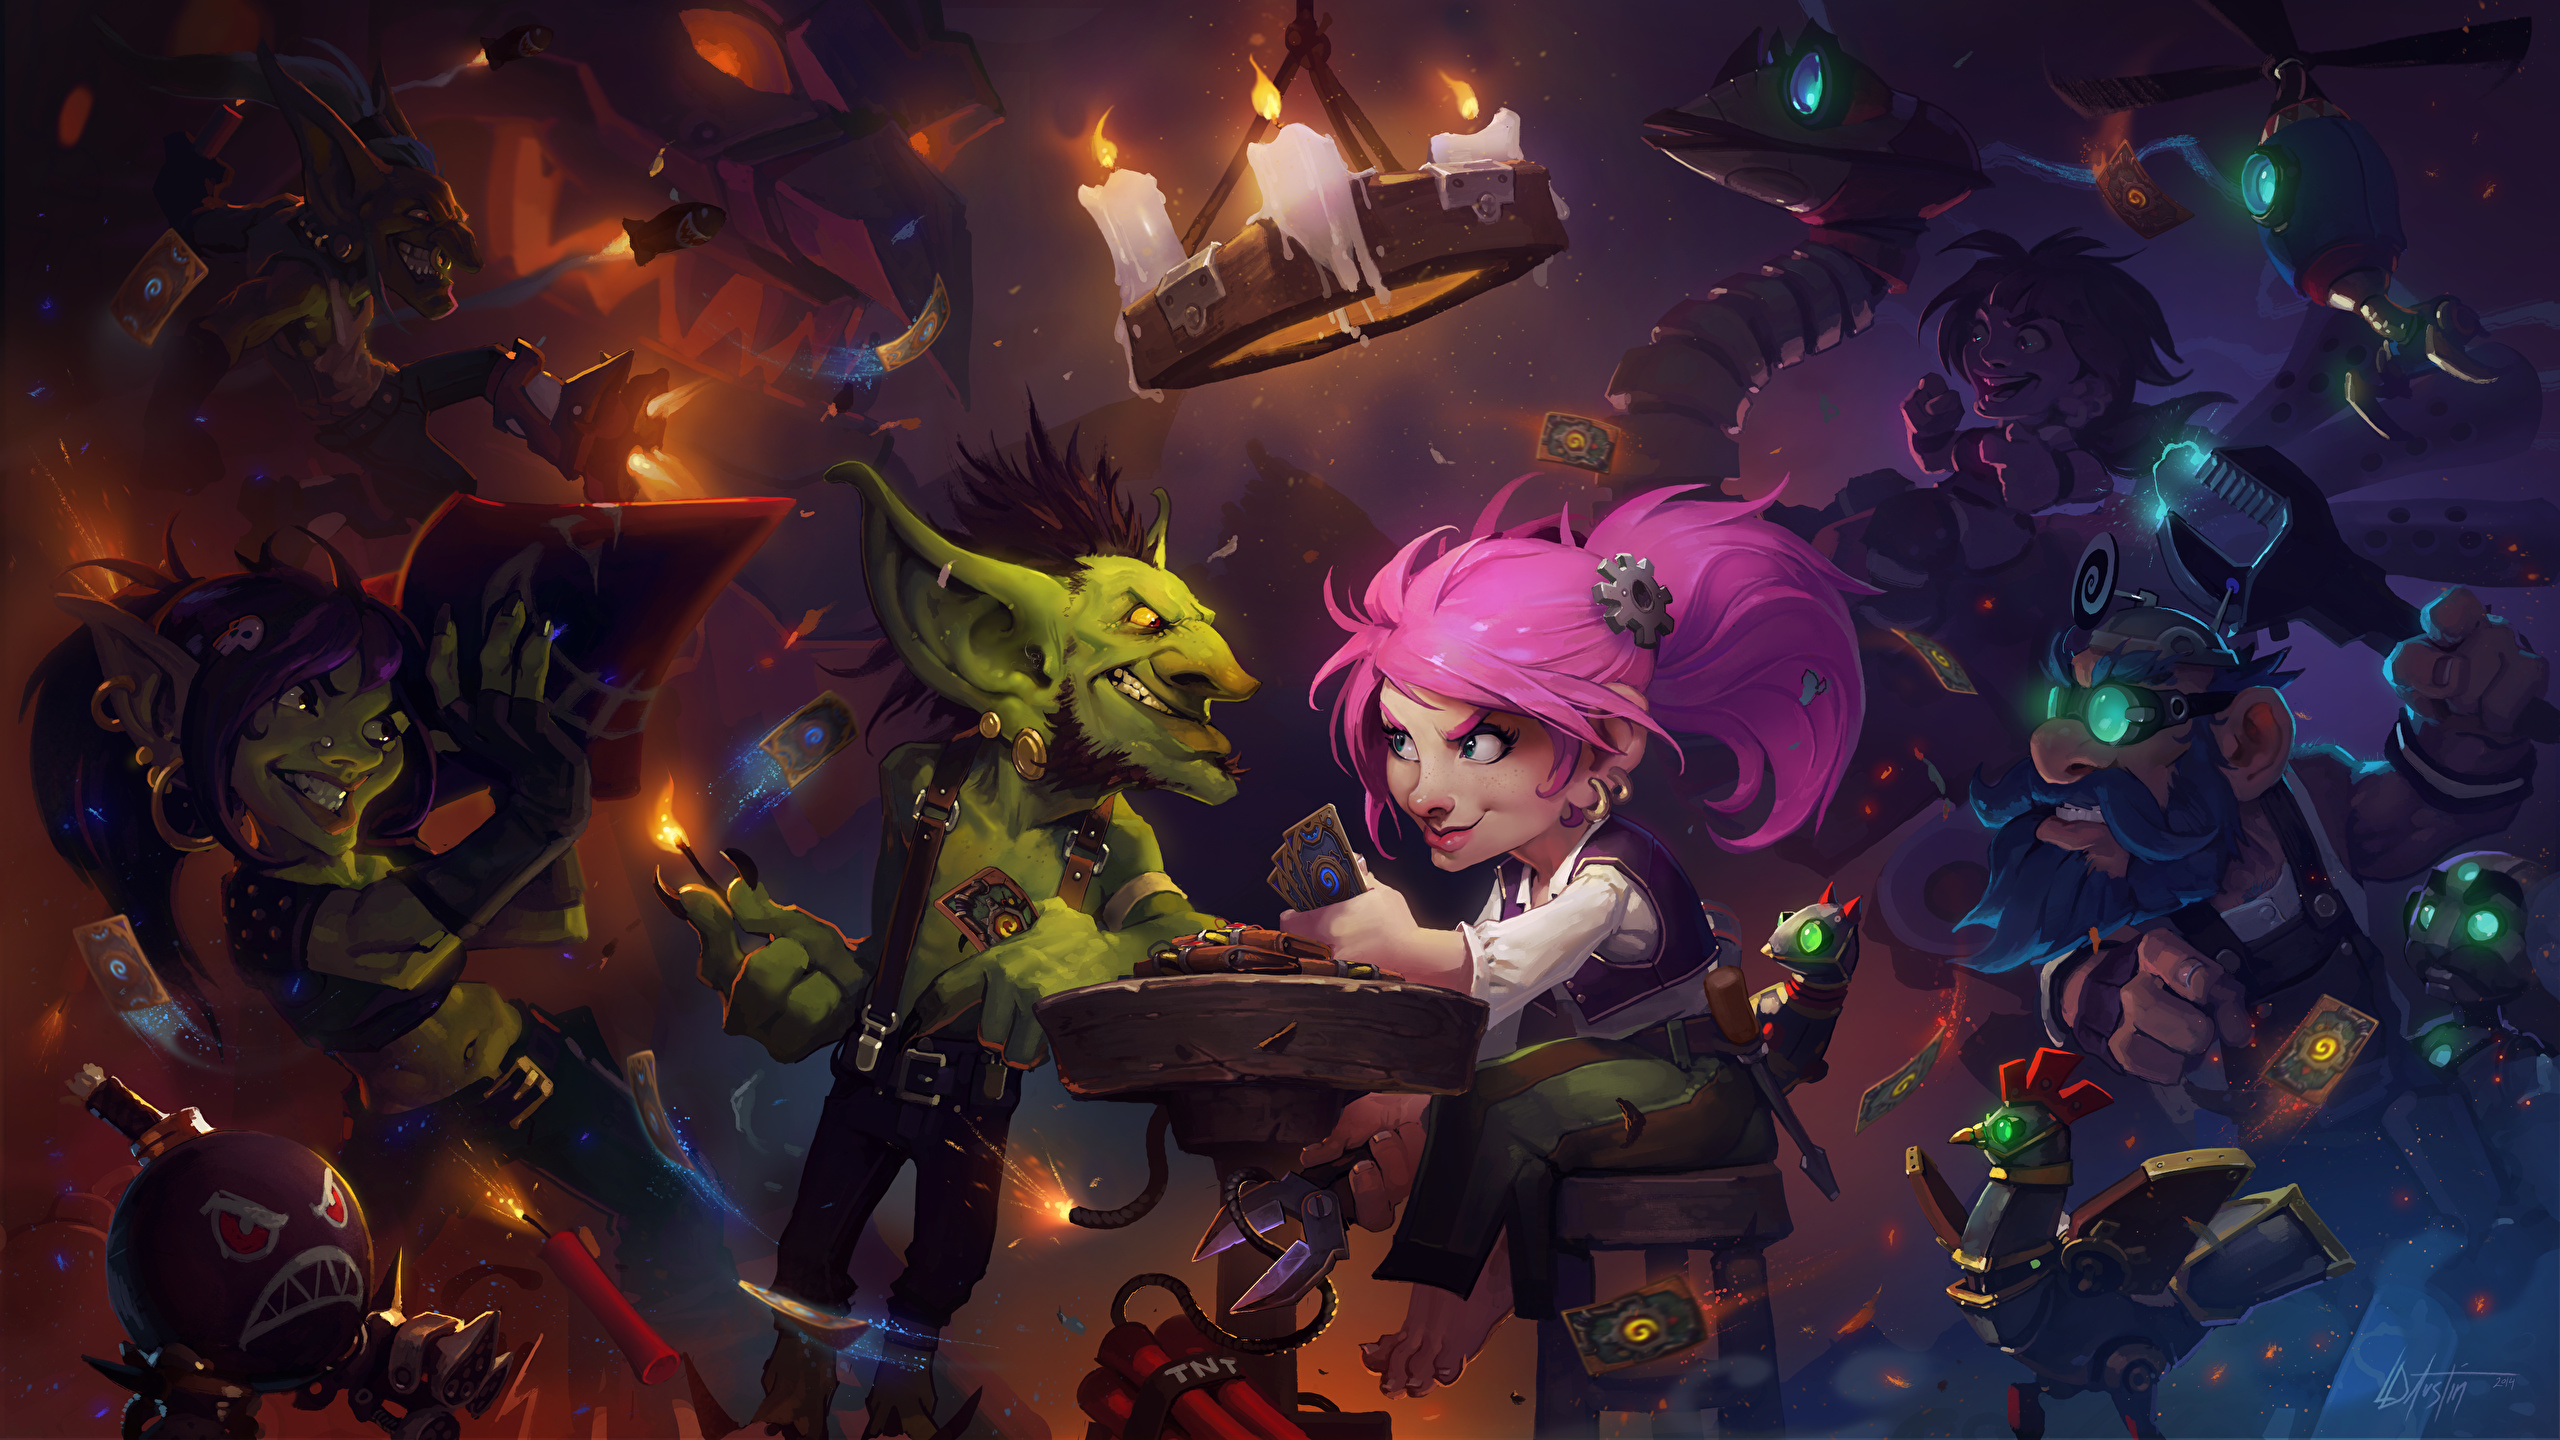 壁紙 2560x1440 Hearthstone Heroes Of Warcraft ドワーフ キャンドル ゴブリン Goblins Vs Gnomes ゲーム ファンタジー ダウンロード 写真